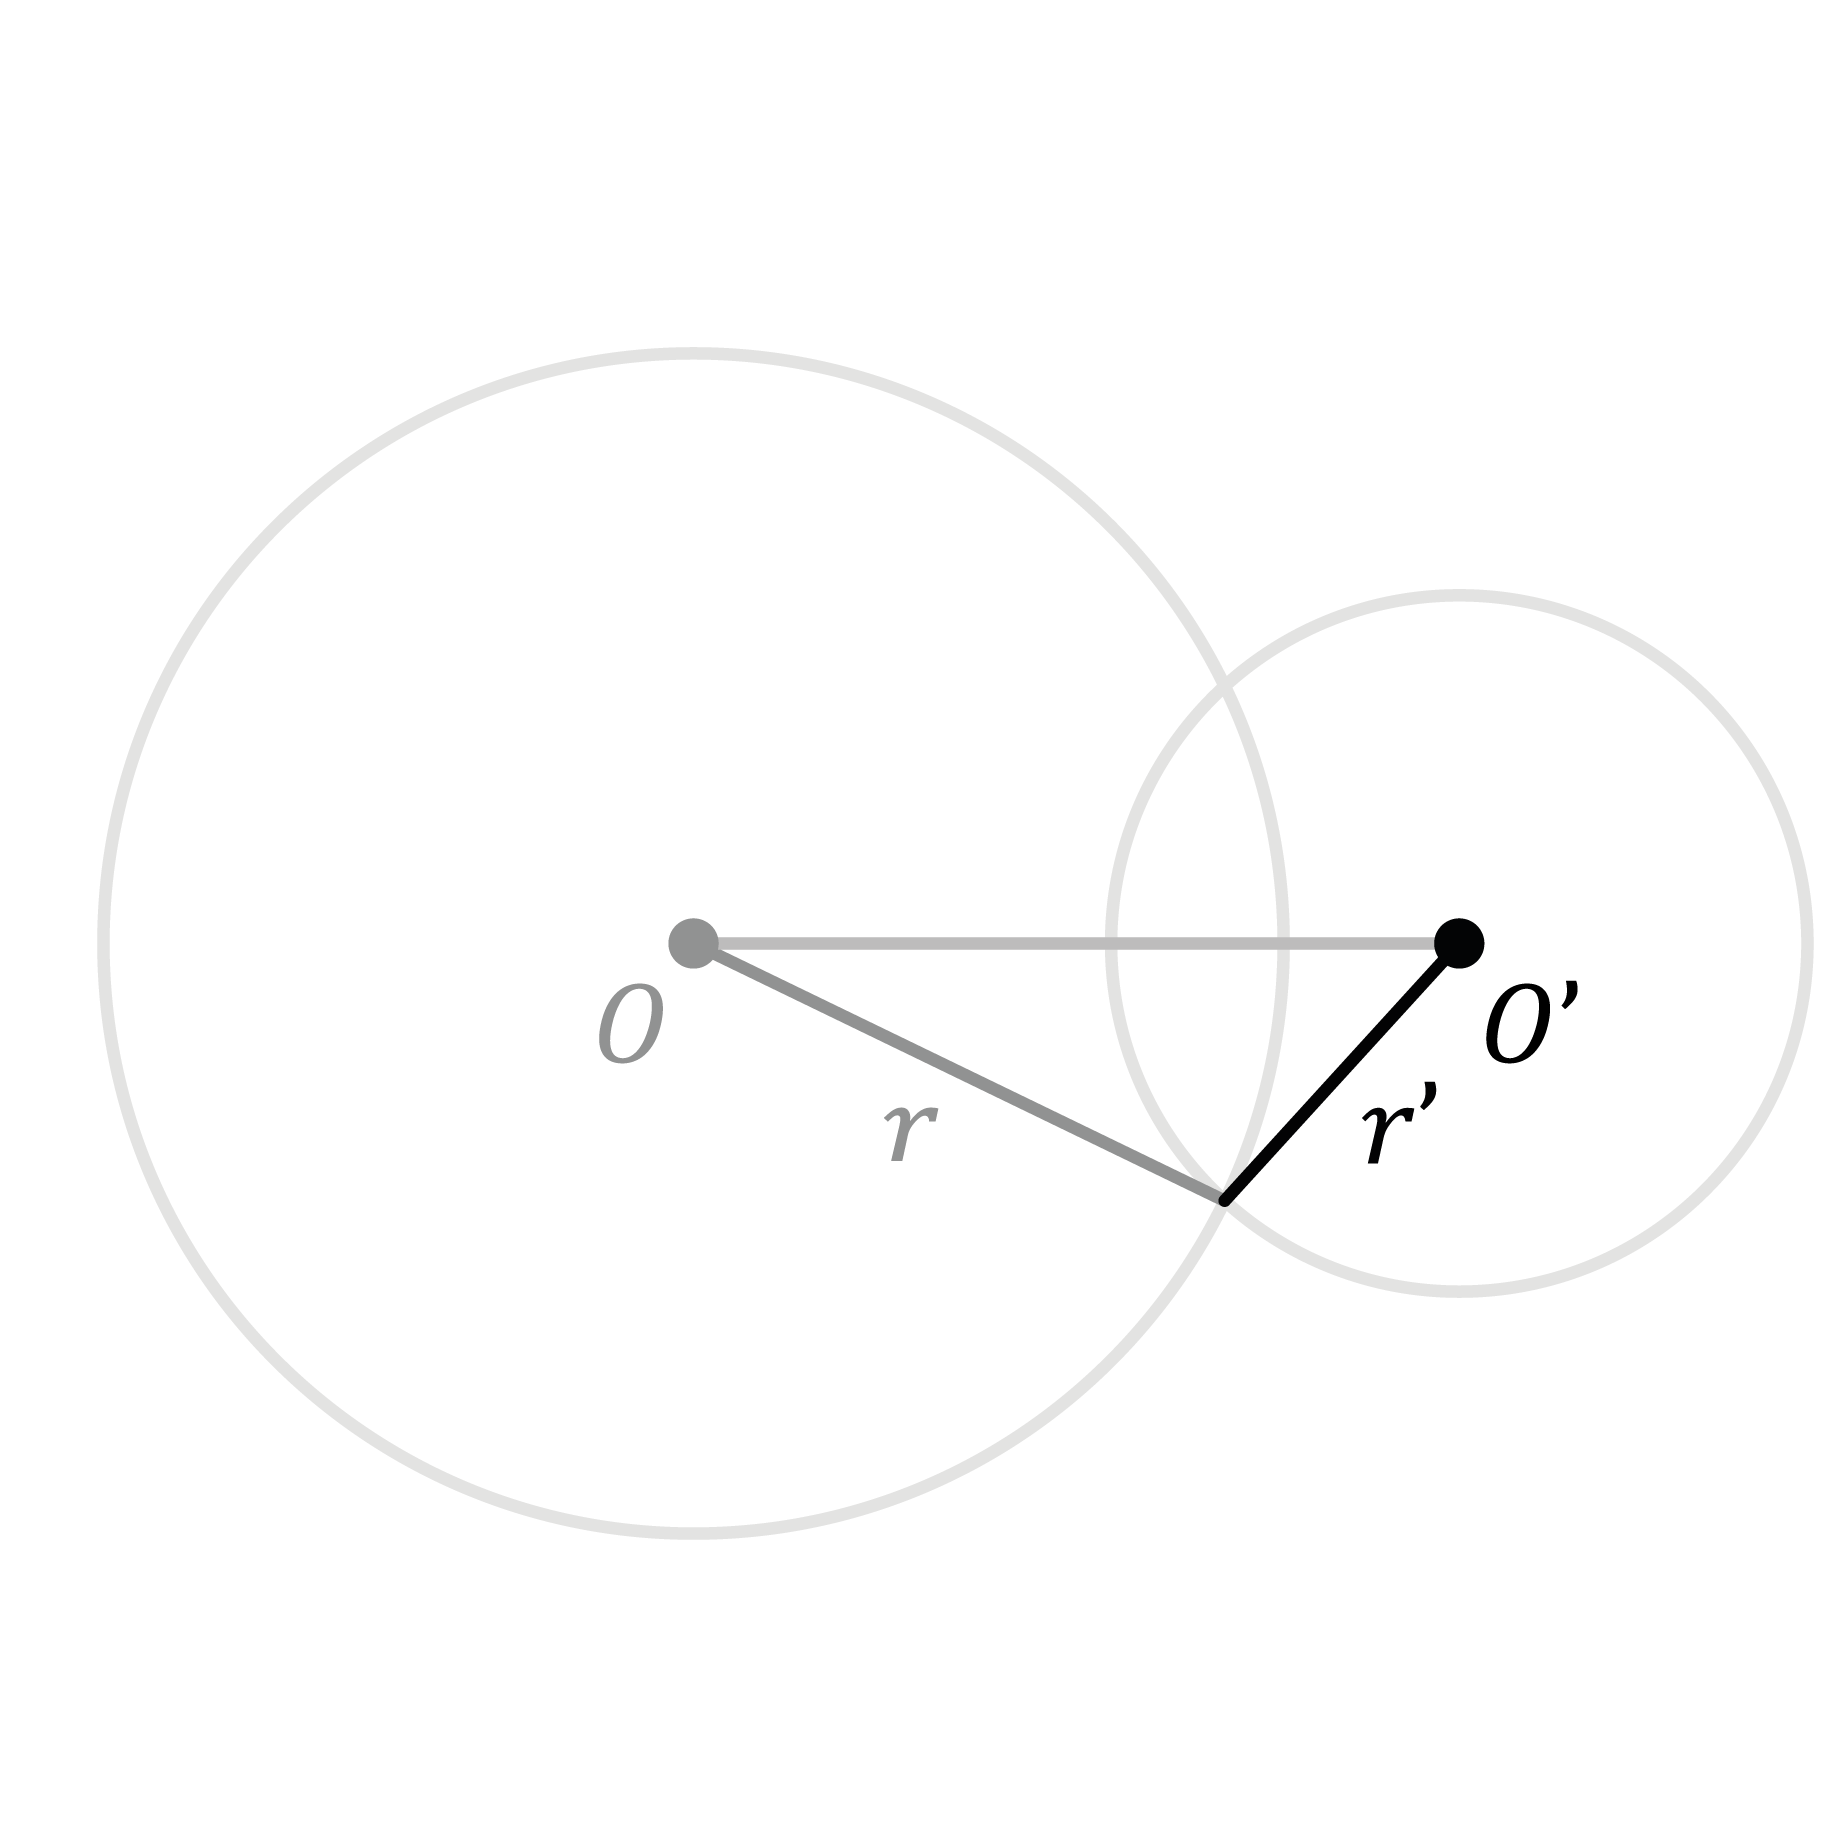 Matematica; Coniche nel piano cartesiano; 2a superiore; Circonferenza e cerchio